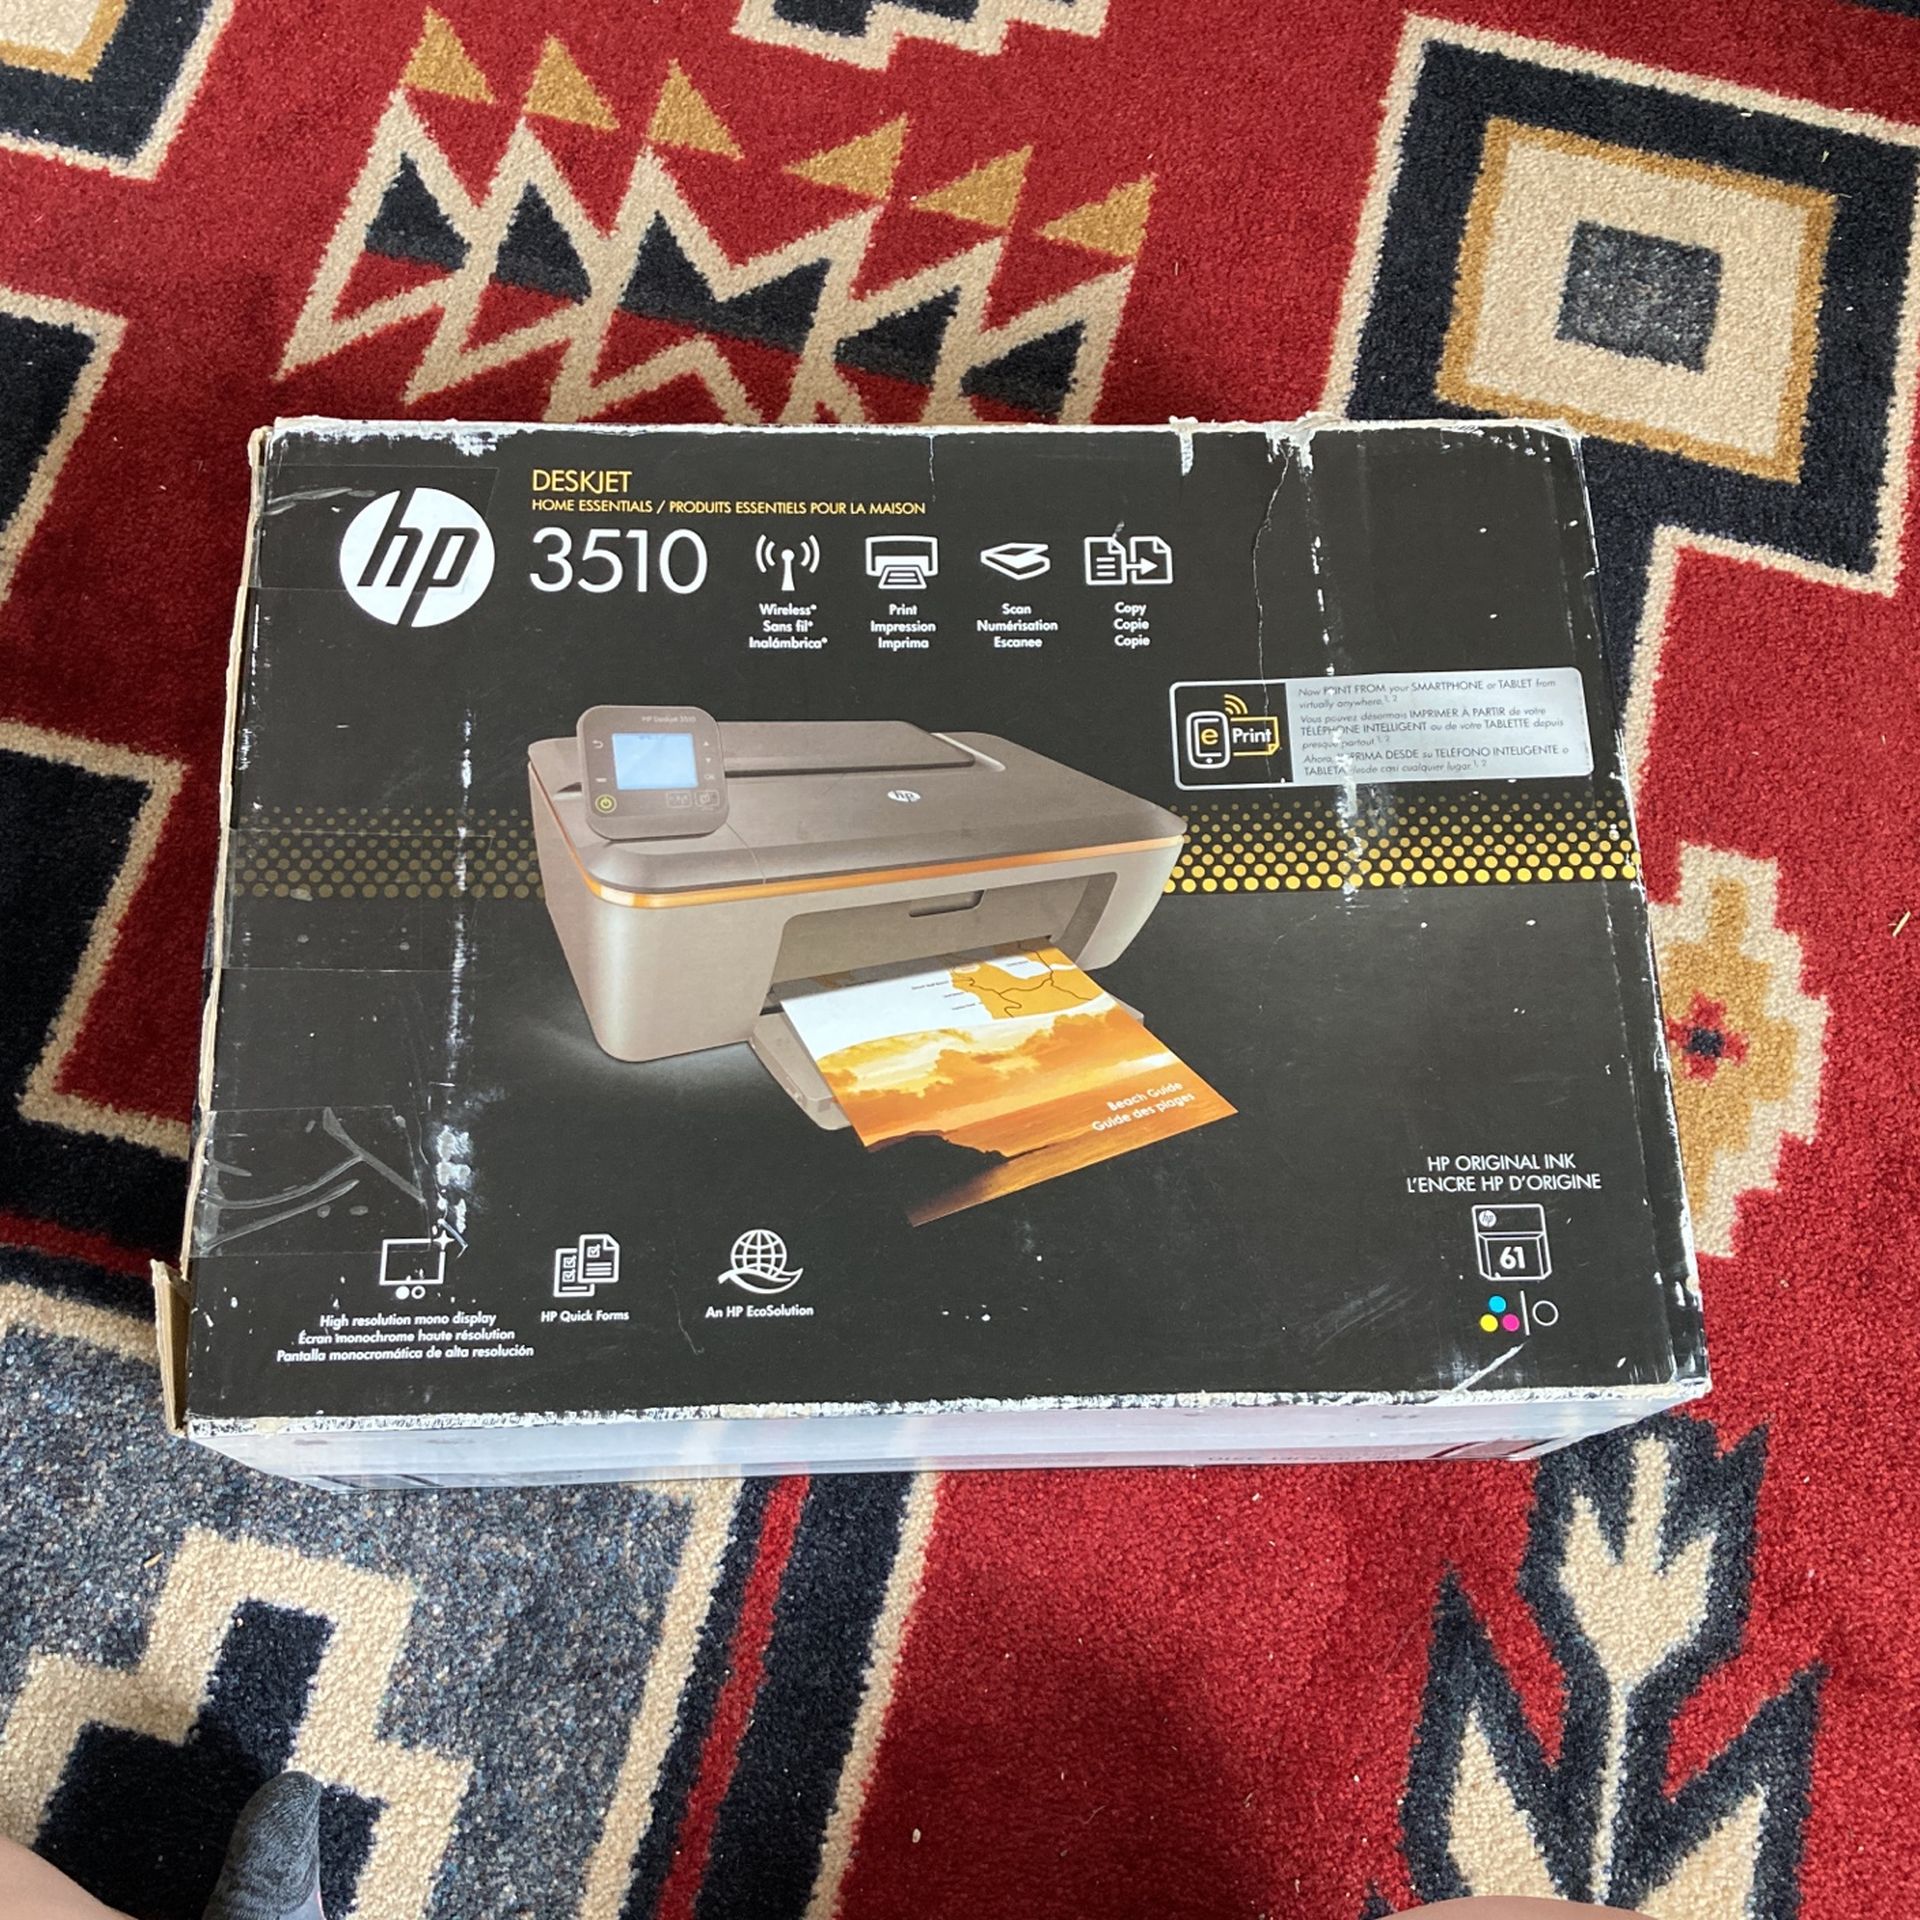 Printer - Deskjet HP 3510